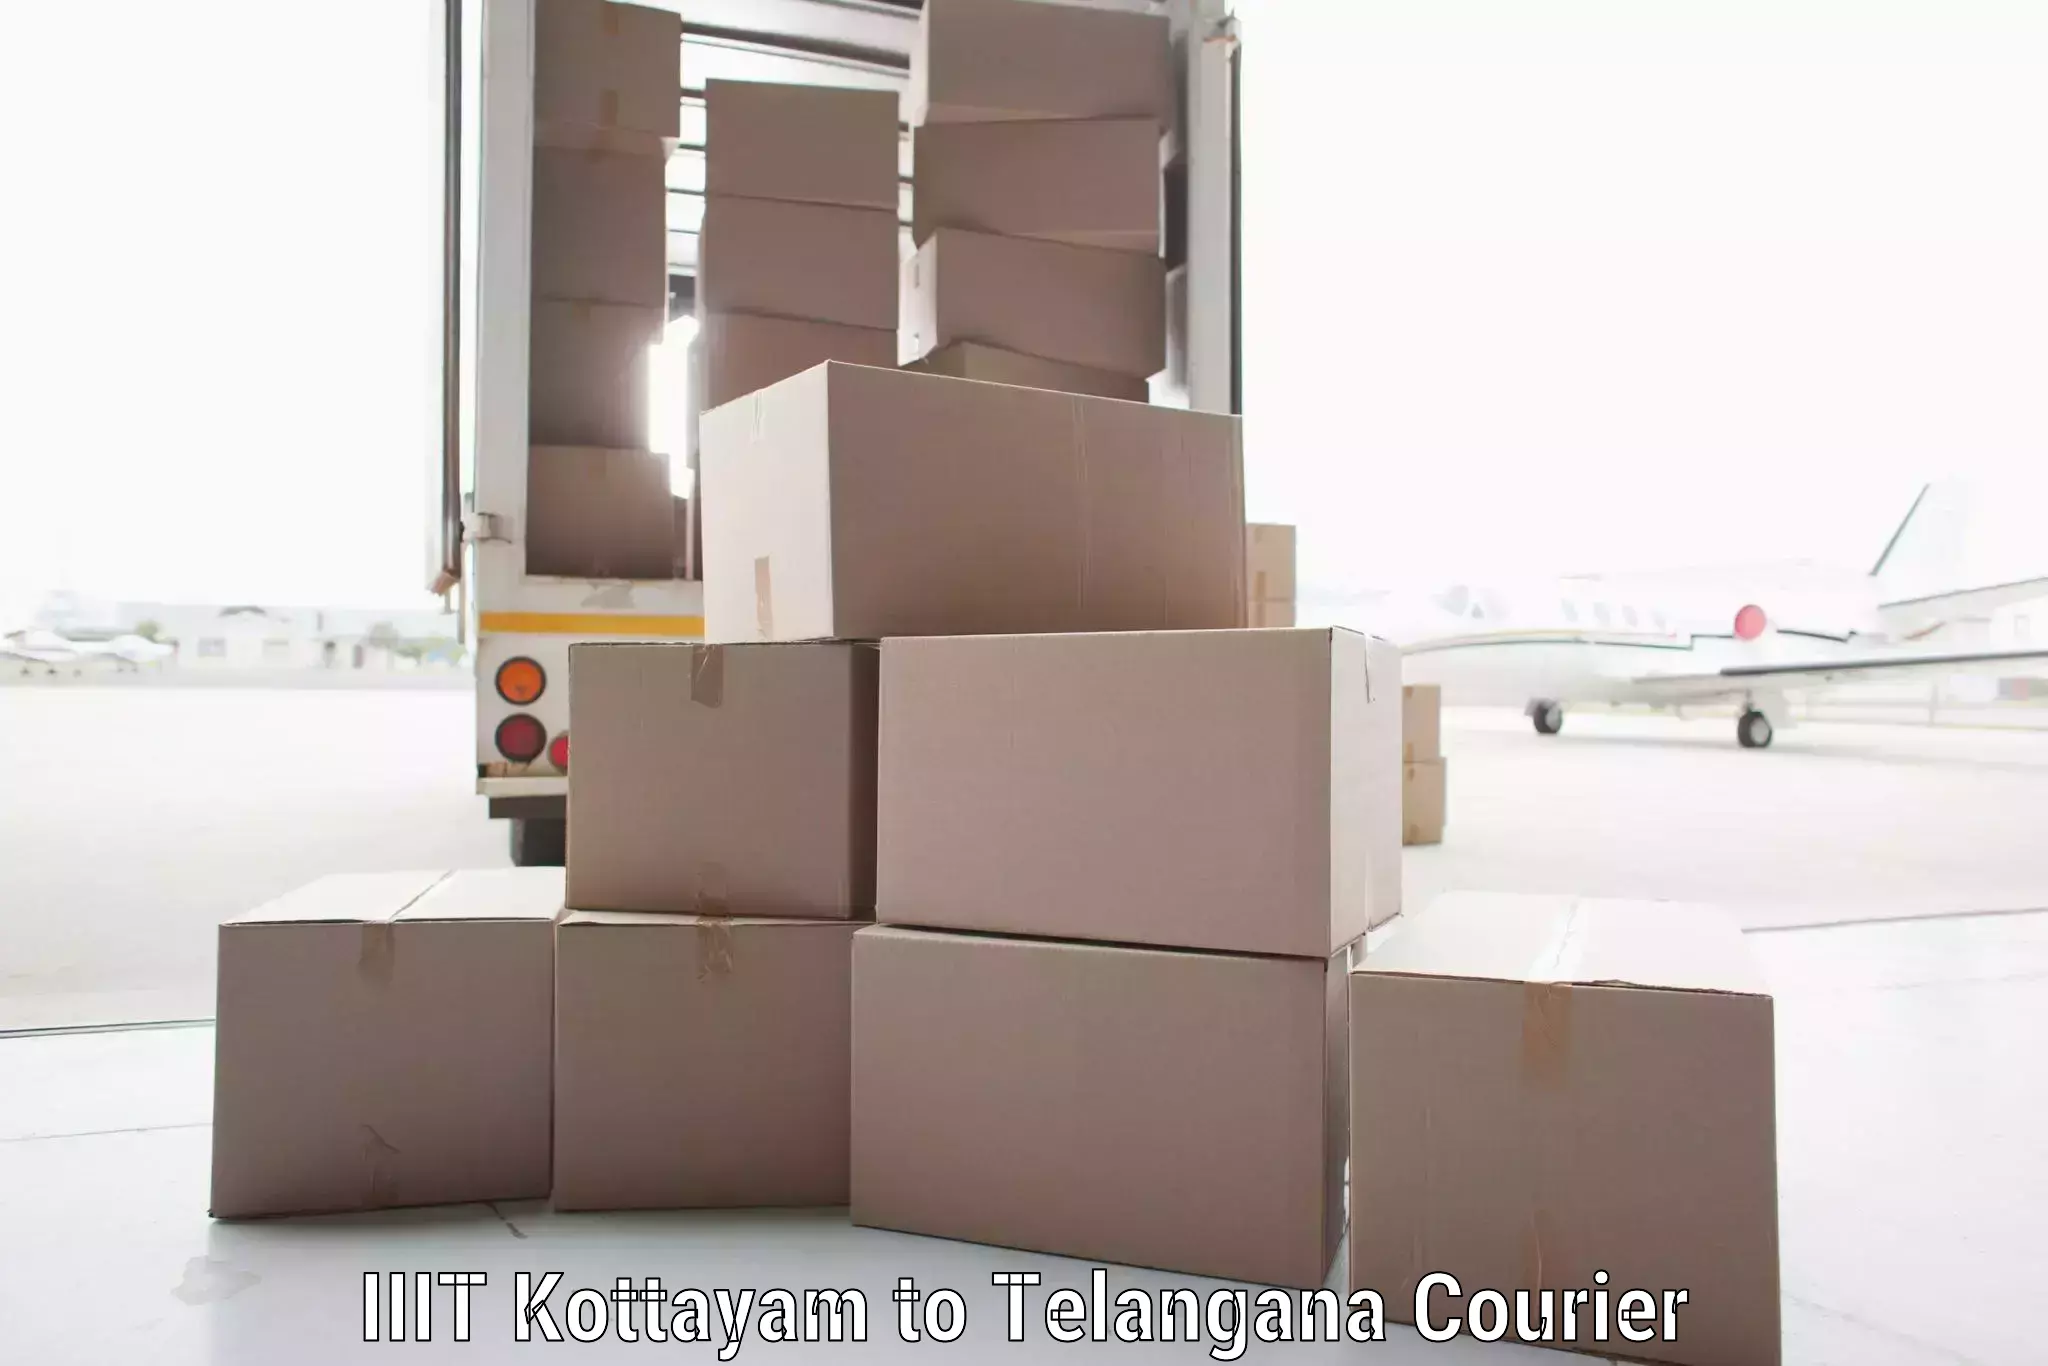 Global parcel delivery IIIT Kottayam to Bhupalpally